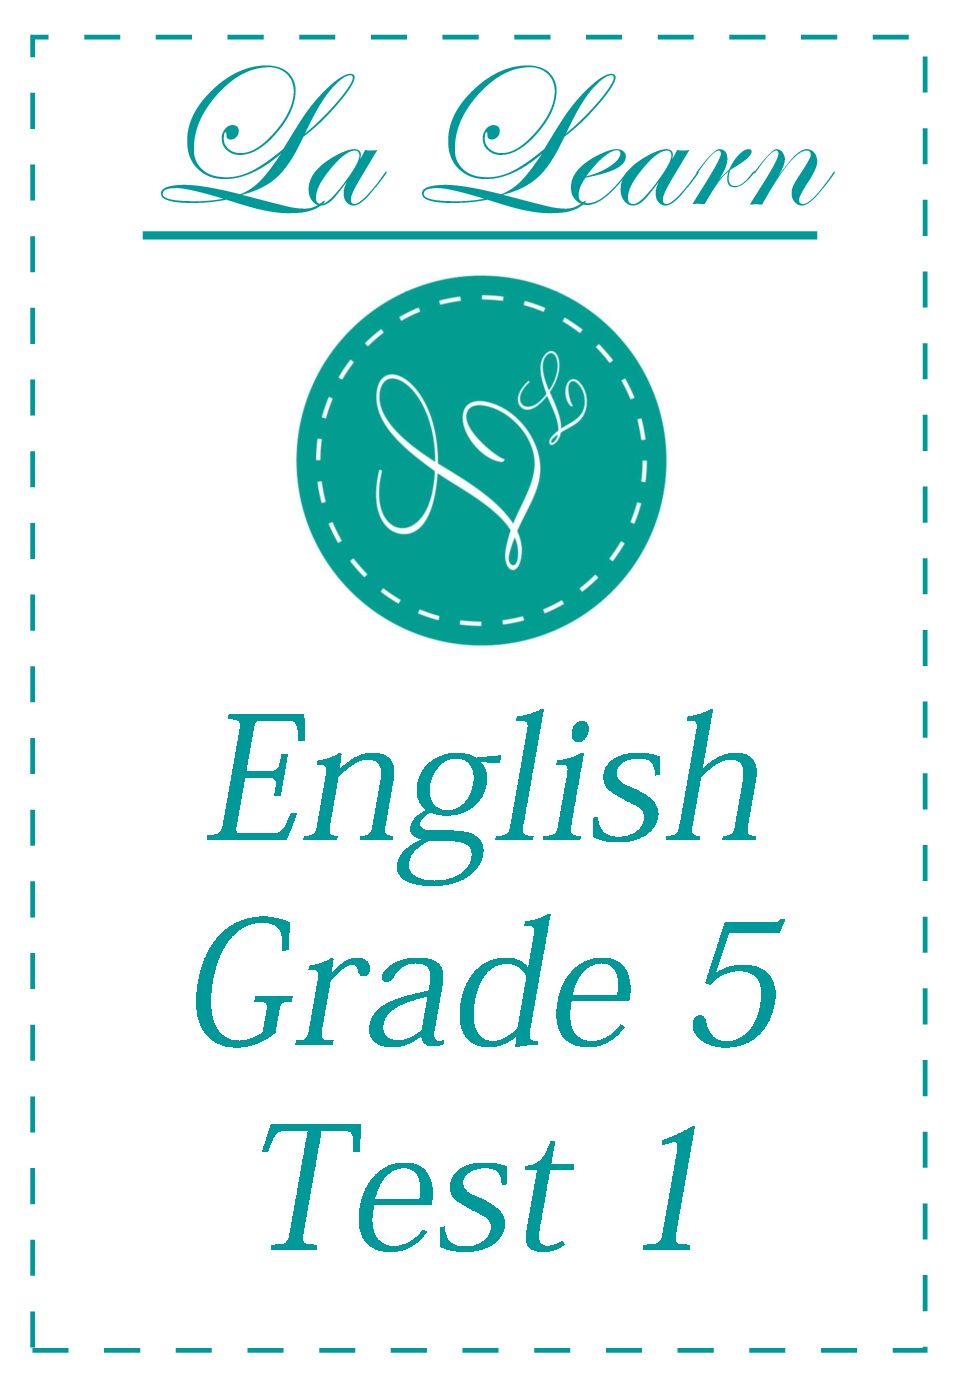 Grade 5 Eng Test 1